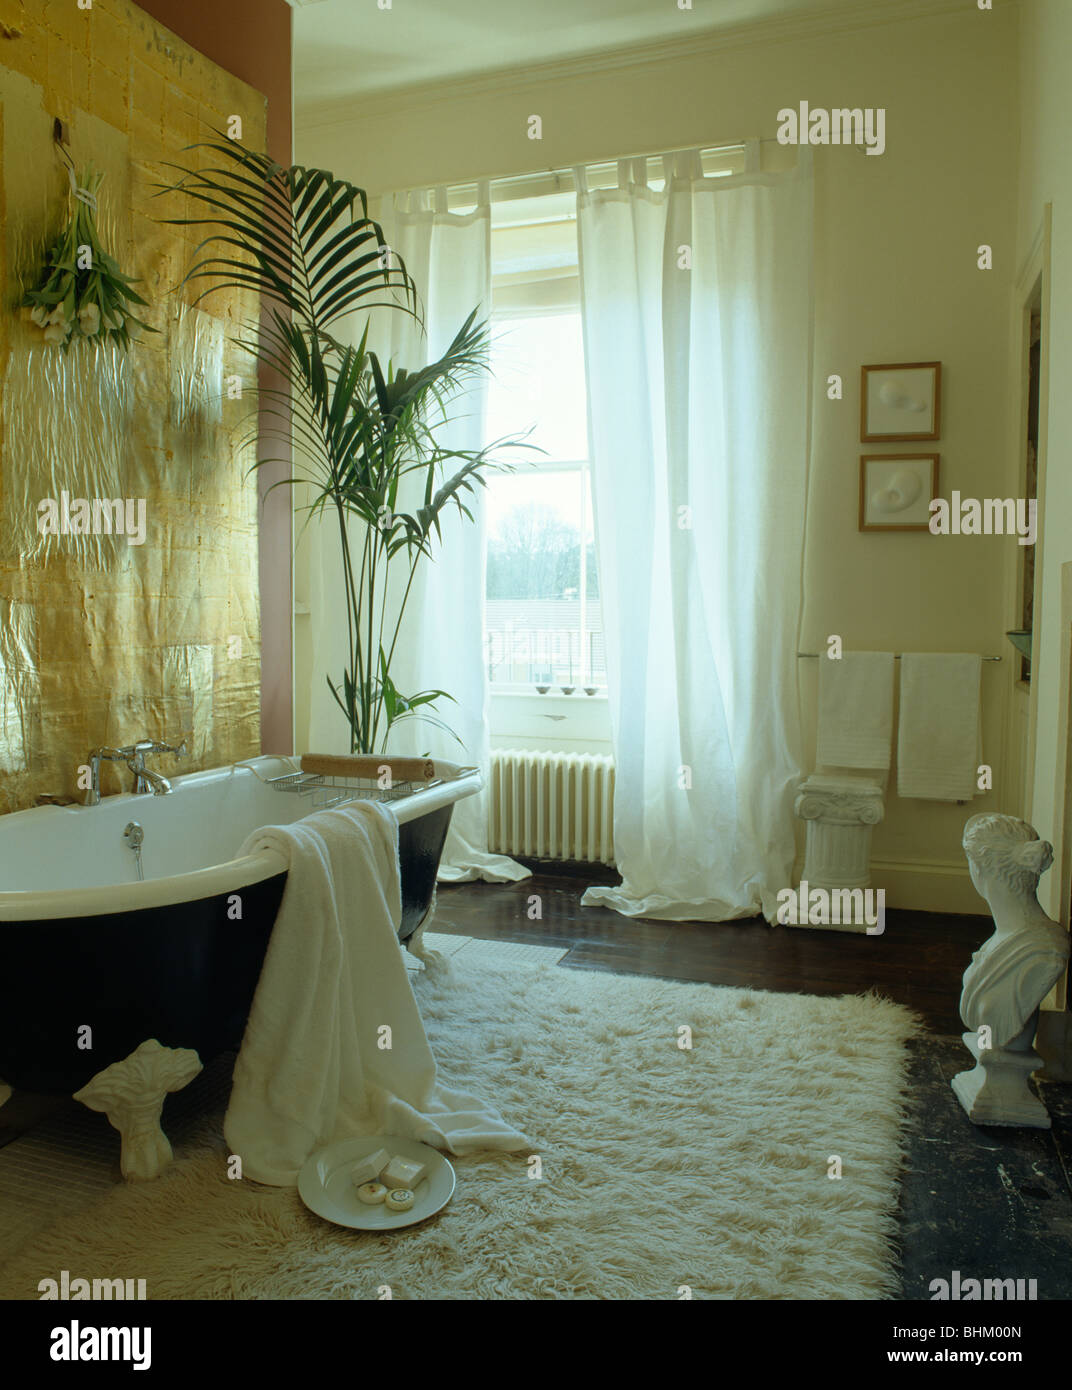 Panel dorado metálico encima del rodillo superior con bañera en el cuarto  de baño con ventana alfombras Flokati blanco con cortinas blancas  Fotografía de stock - Alamy